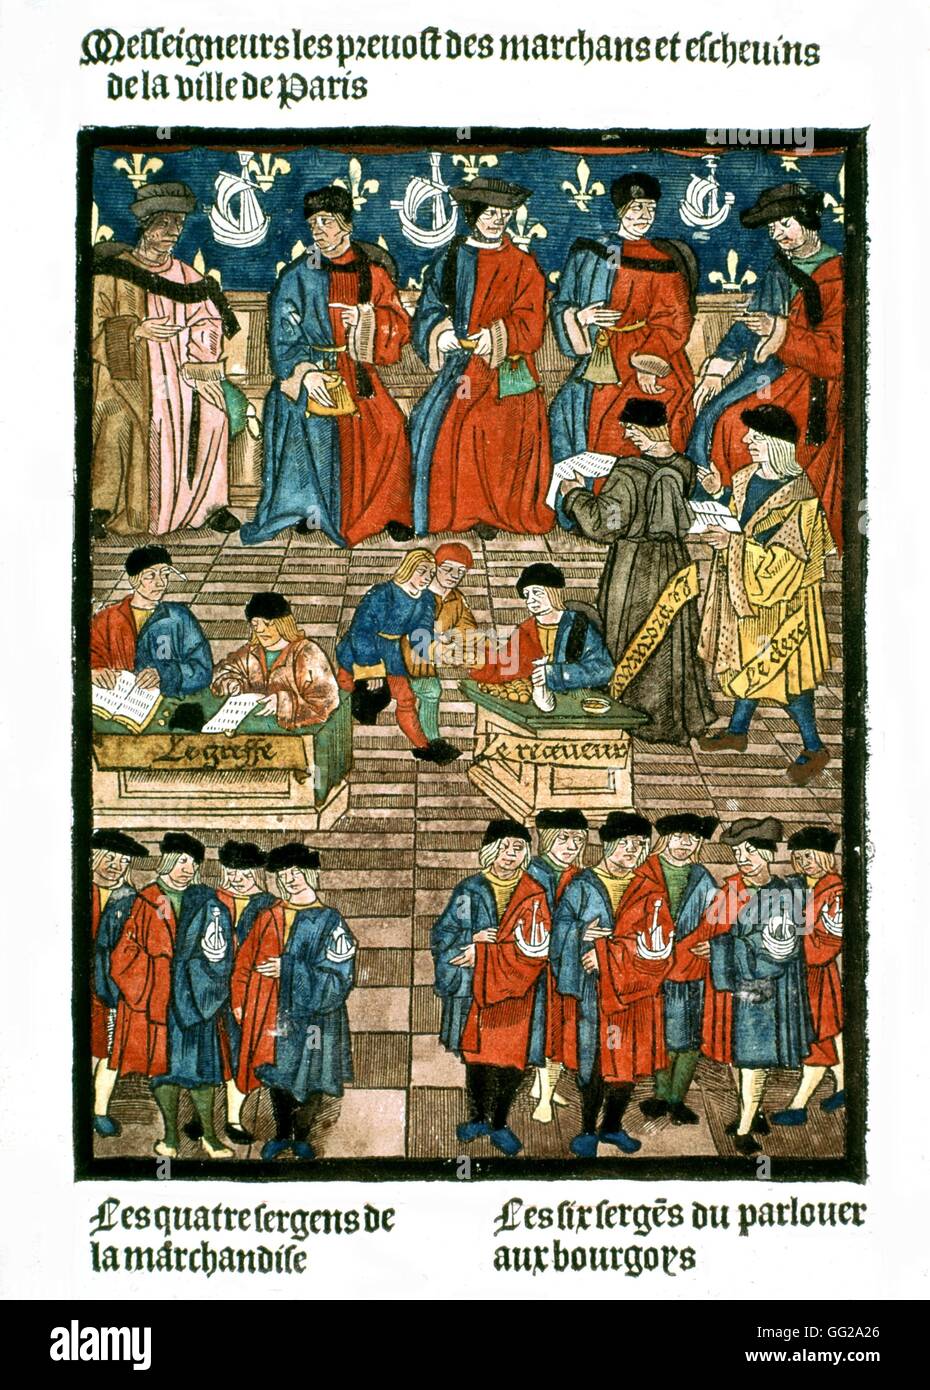 Frontispiece of the Royal Edict of the Paris merchants' provotship. The merchants' provosts and aldermen of Paris 1500 France Paris. Bibliothèque de l'arsenal Stock Photo